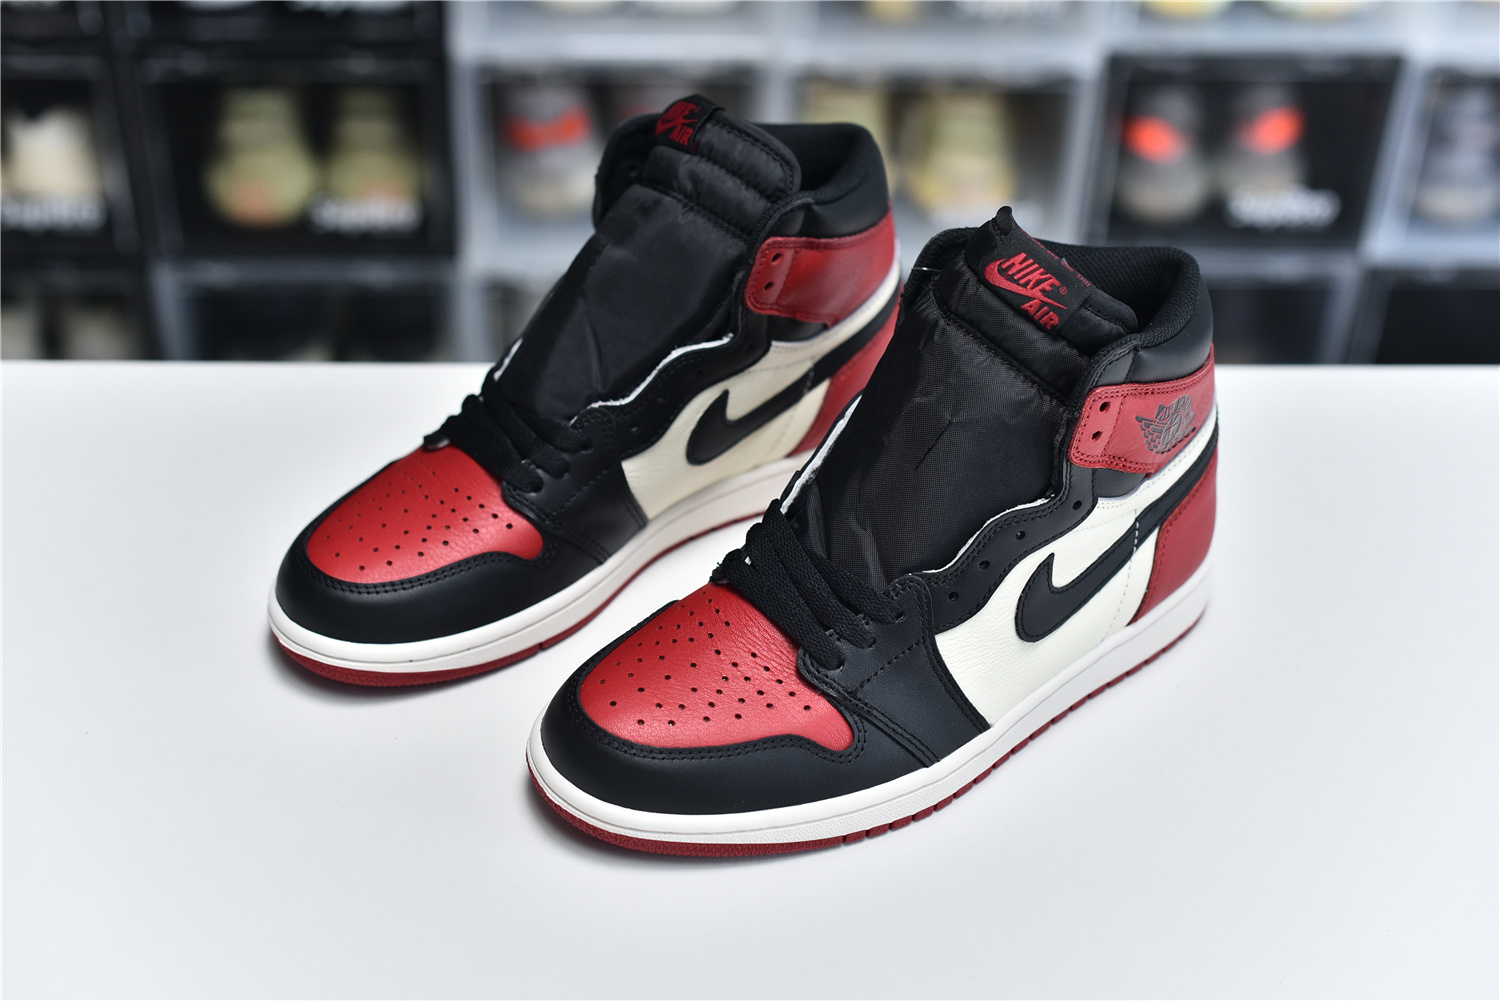 Nike Air Jordan 1 Retro High Og Red Black White Men Sneakers 555088 610 Kickbulk 8 - www.kickbulk.cc